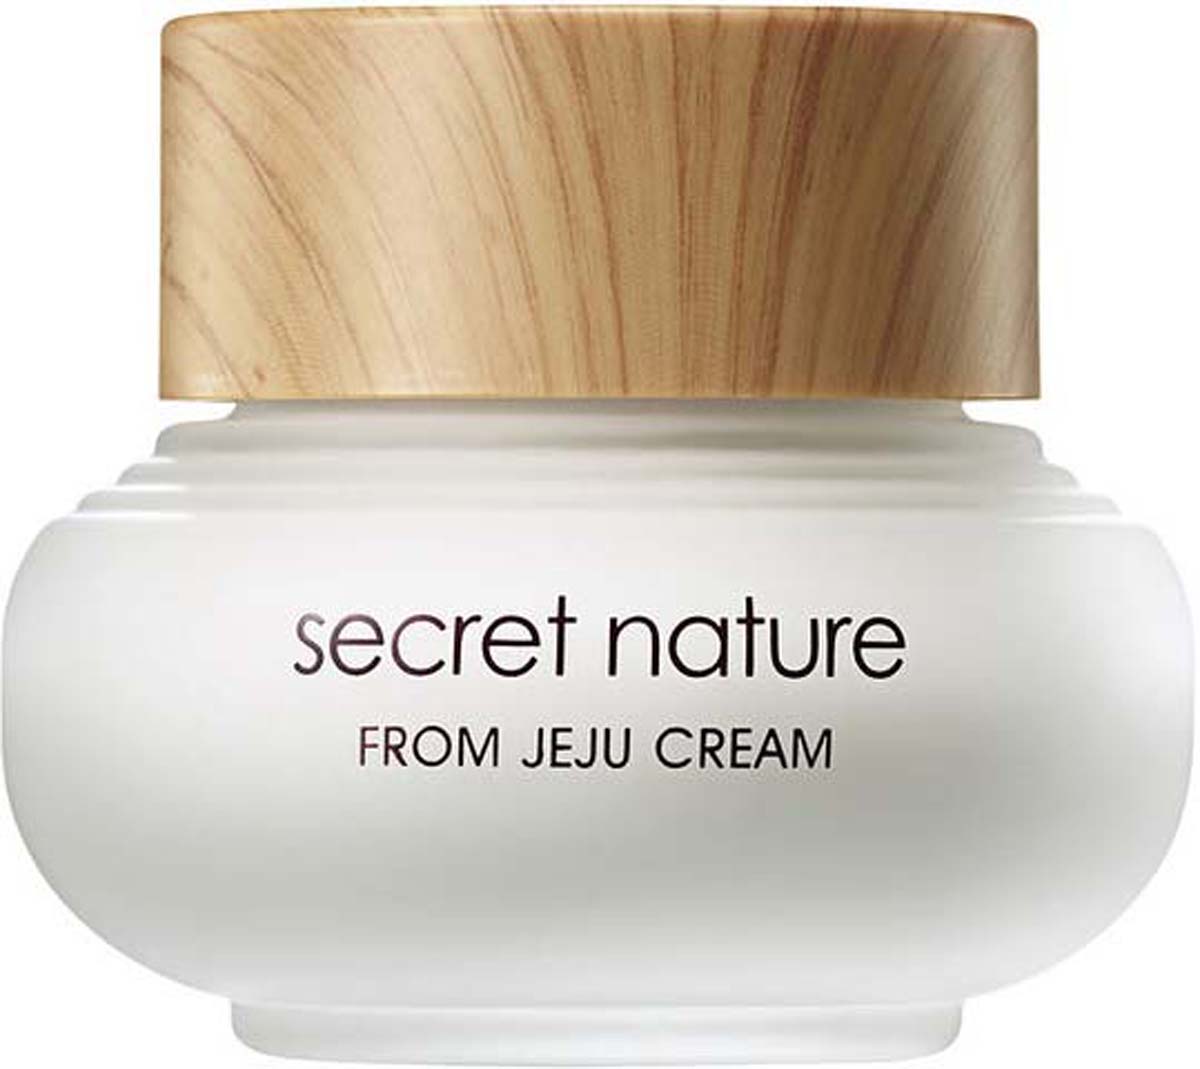 заказать и купить Secret Nature From Jeju Cream Увлажняющий крем с зеленым чаем, 50 мл